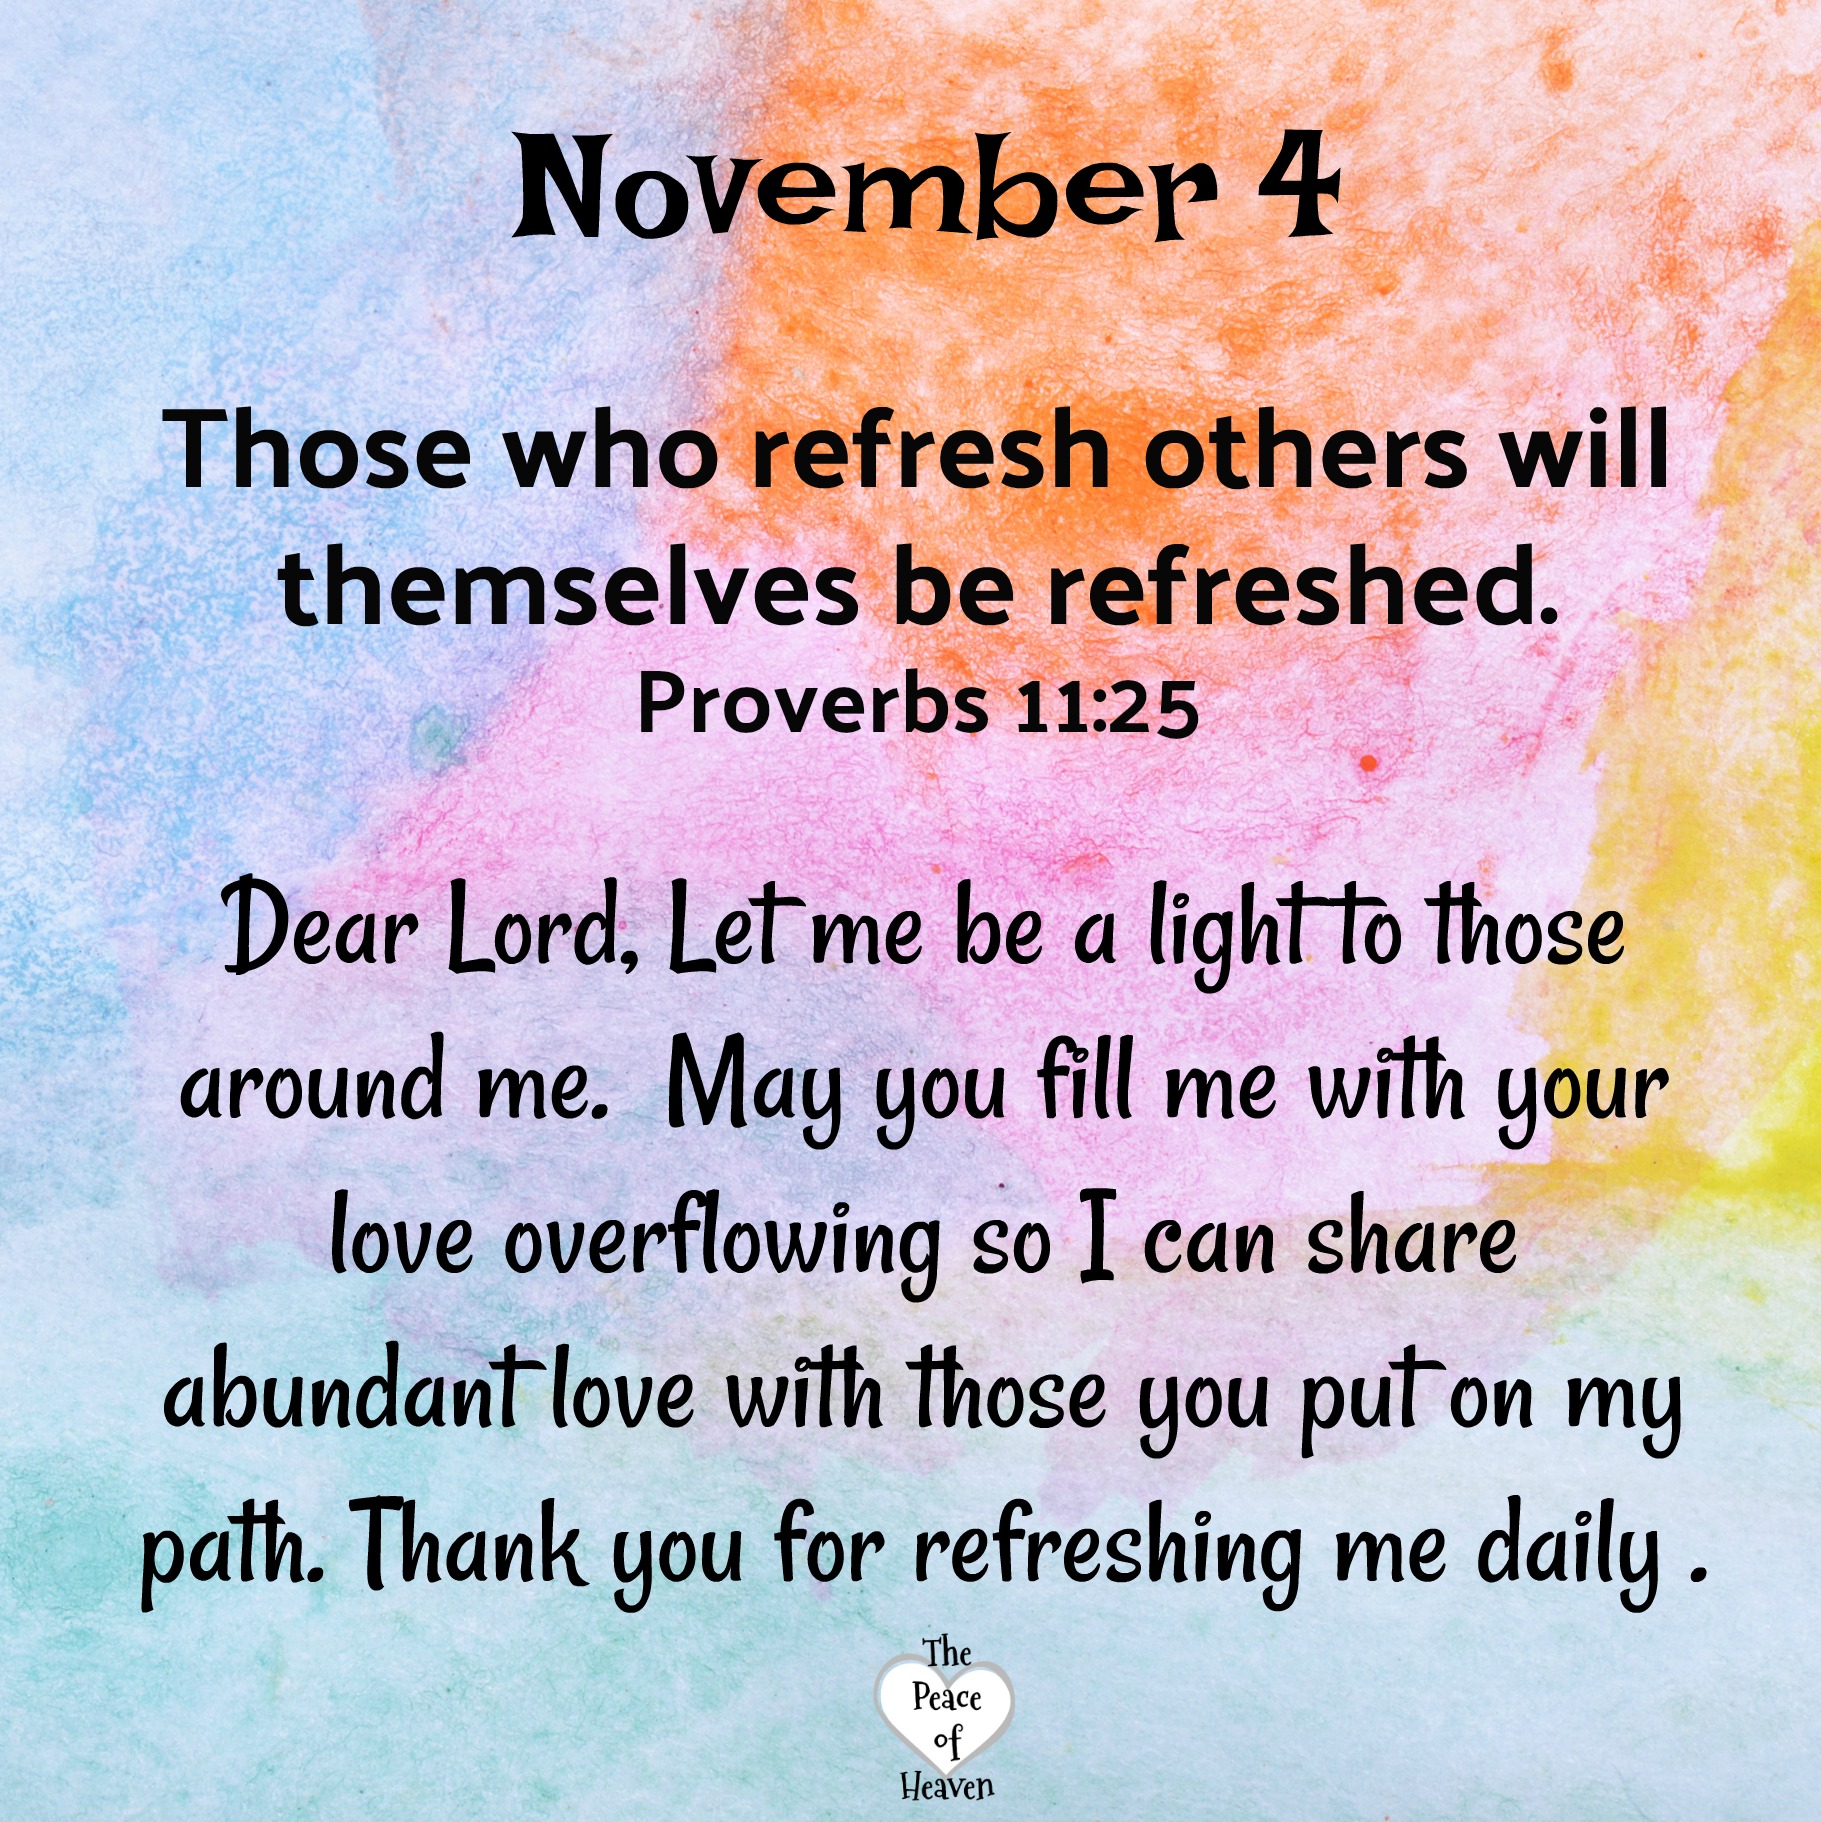 November 4 – The Peace of Heaven